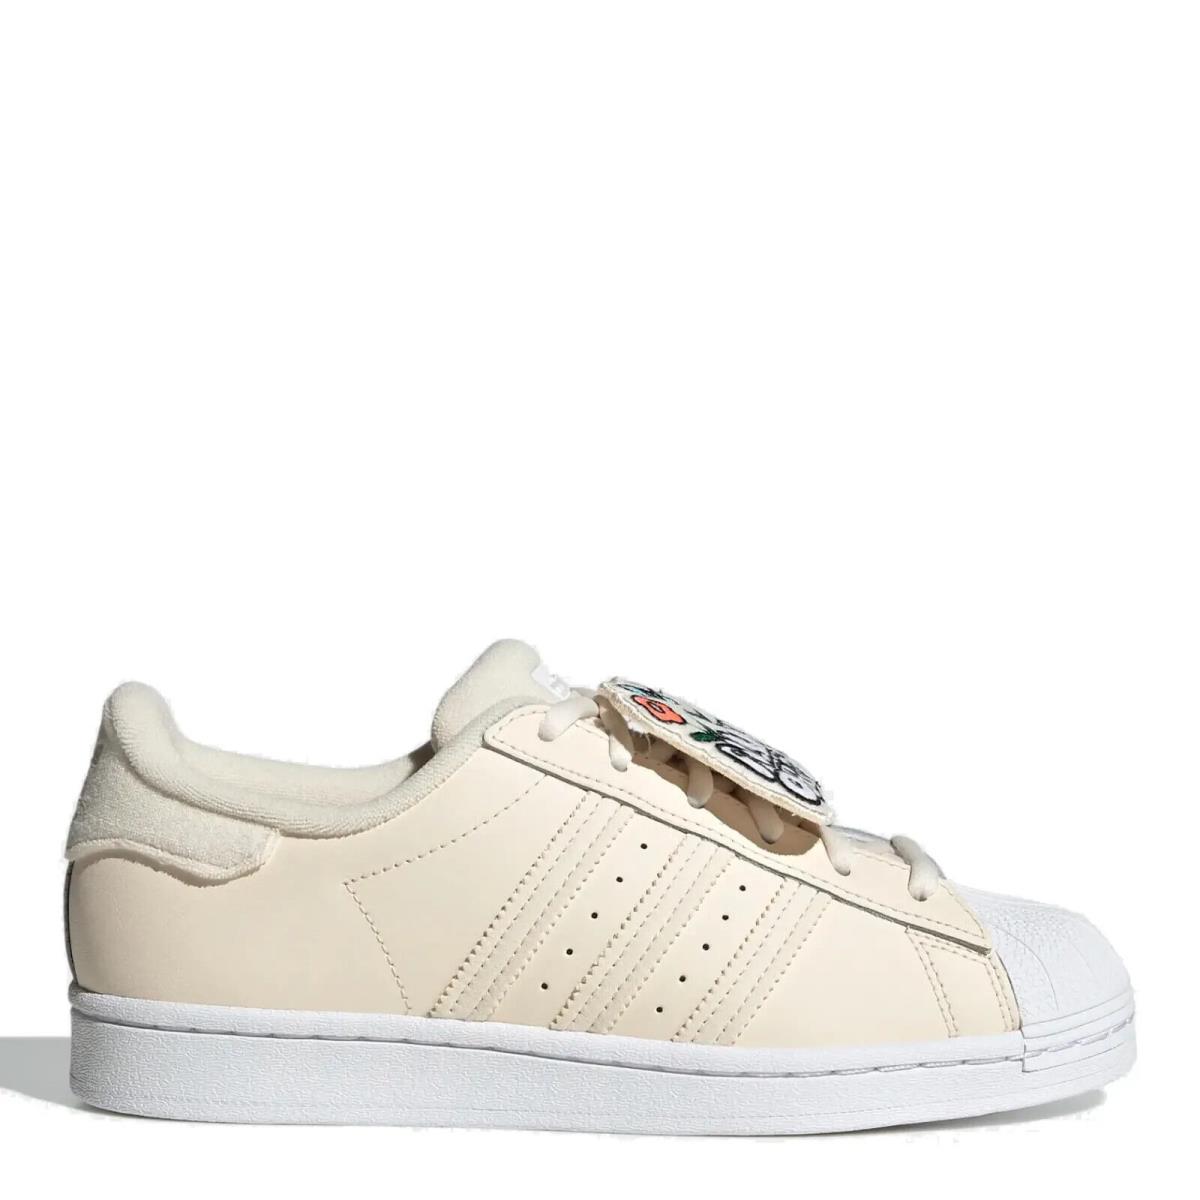 Adidas shoes SUPERSTAR - Beige/White 7